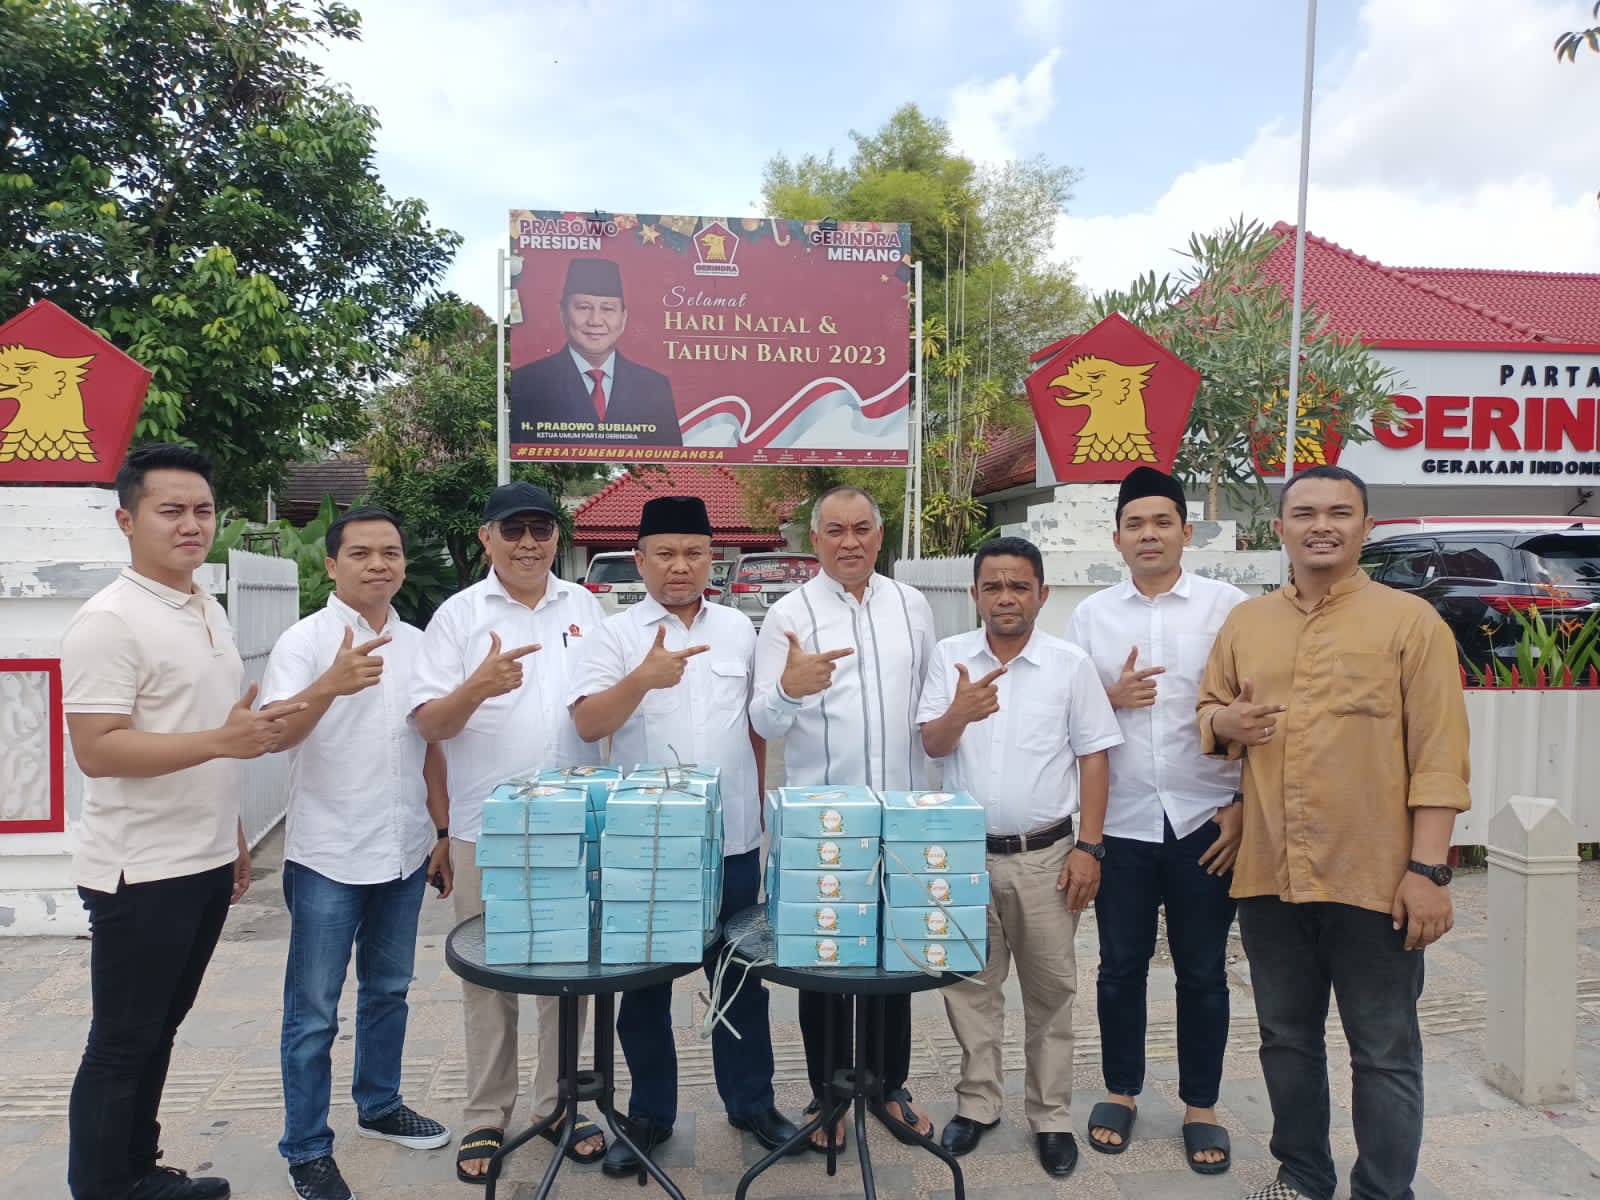 Jumat Berkah Gerindra Sumut Efektif Kampanye Prabowo Presiden